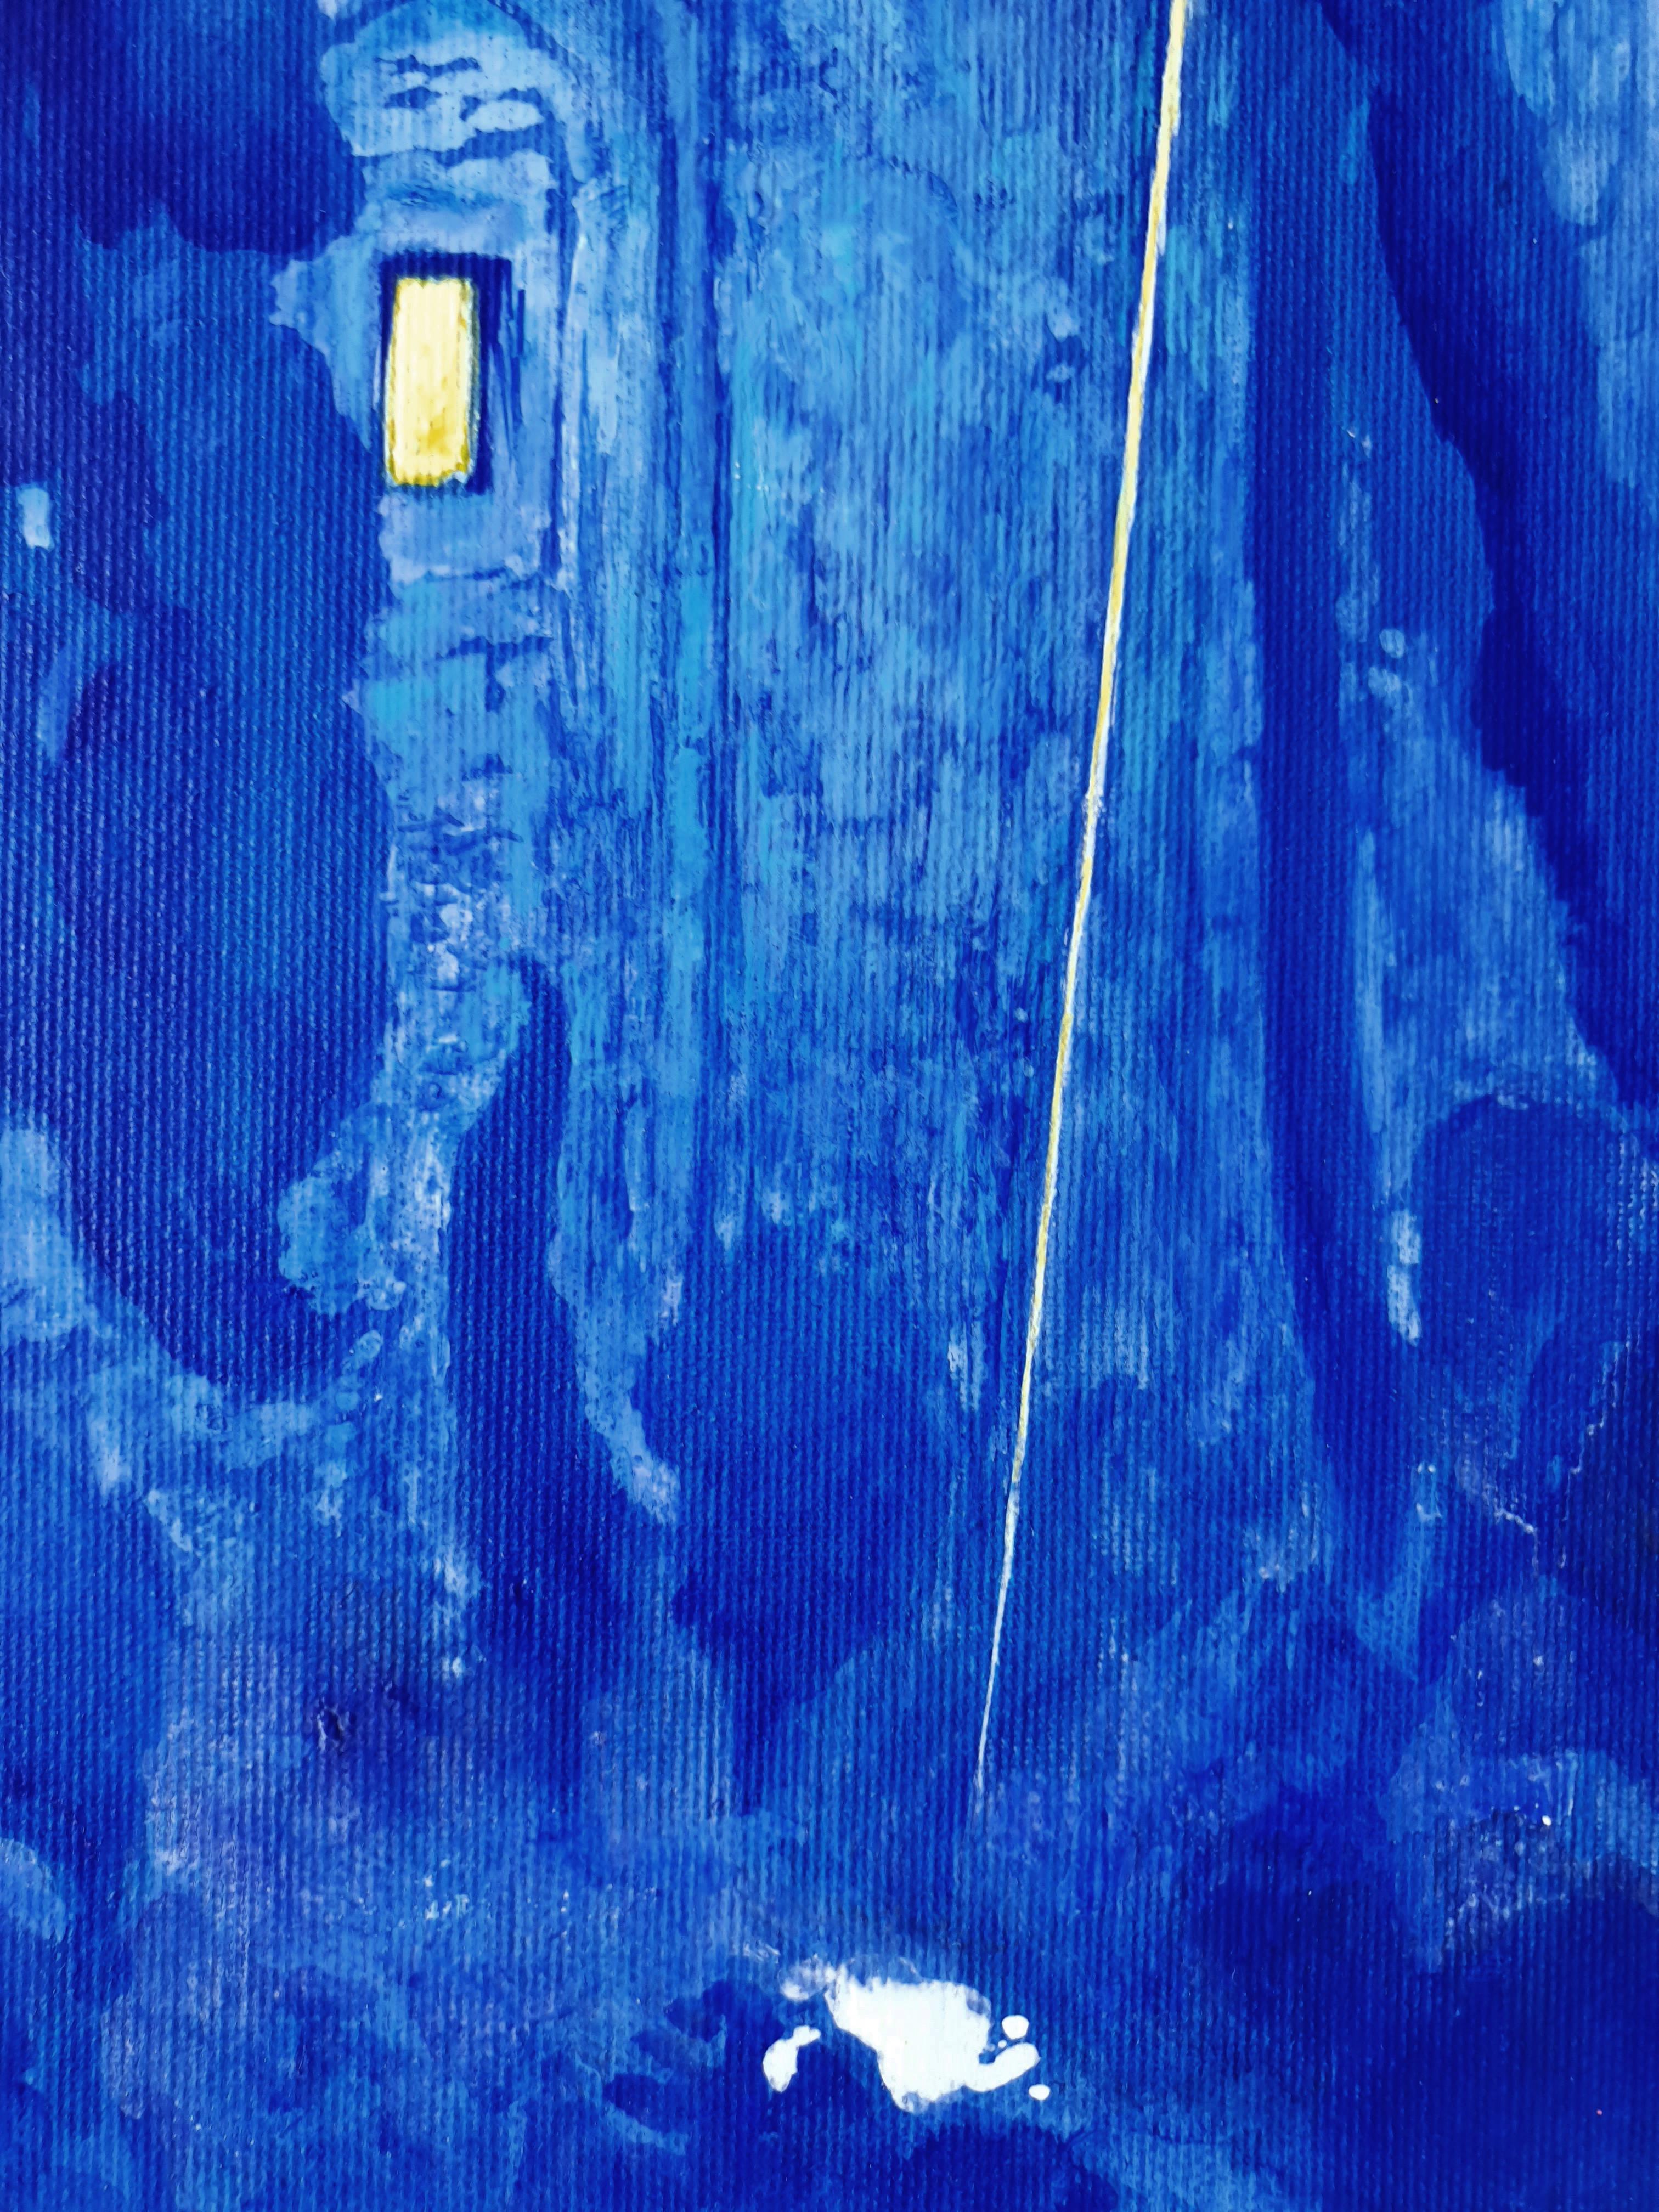 Awakening - Peinture technique mixte couleurs bleu, blanc et jaune  - Abstrait Painting par Petya Deneva